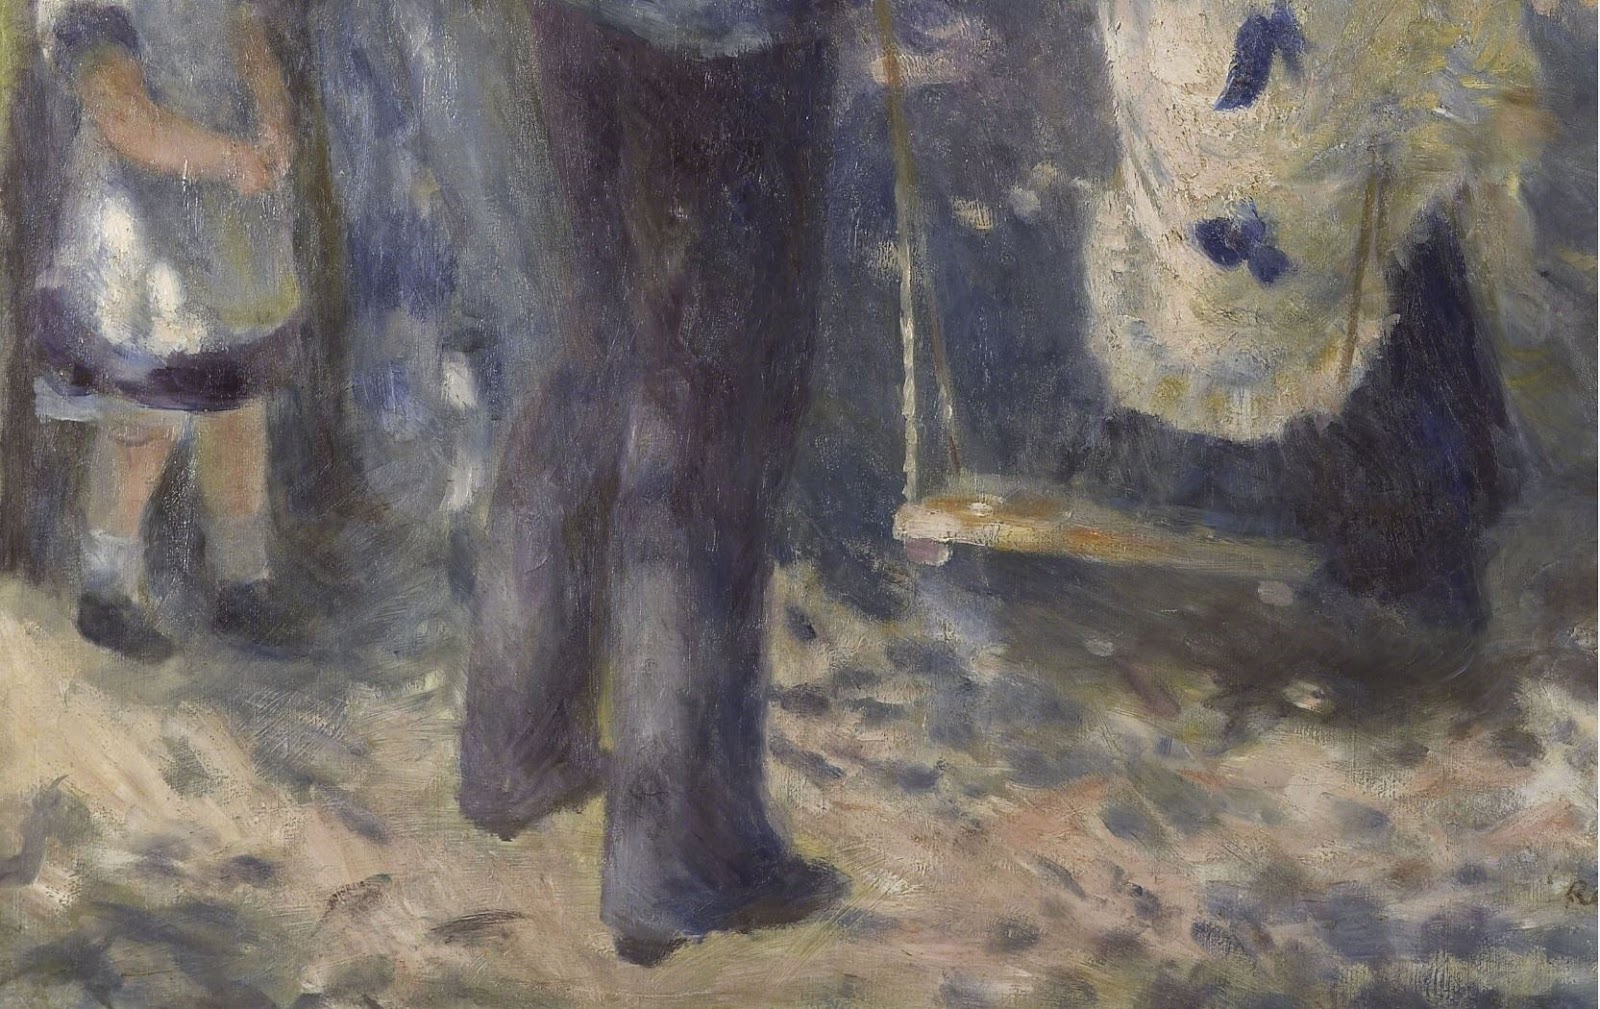 Pierre+Auguste+Renoir-1841-1-19 (697).JPG